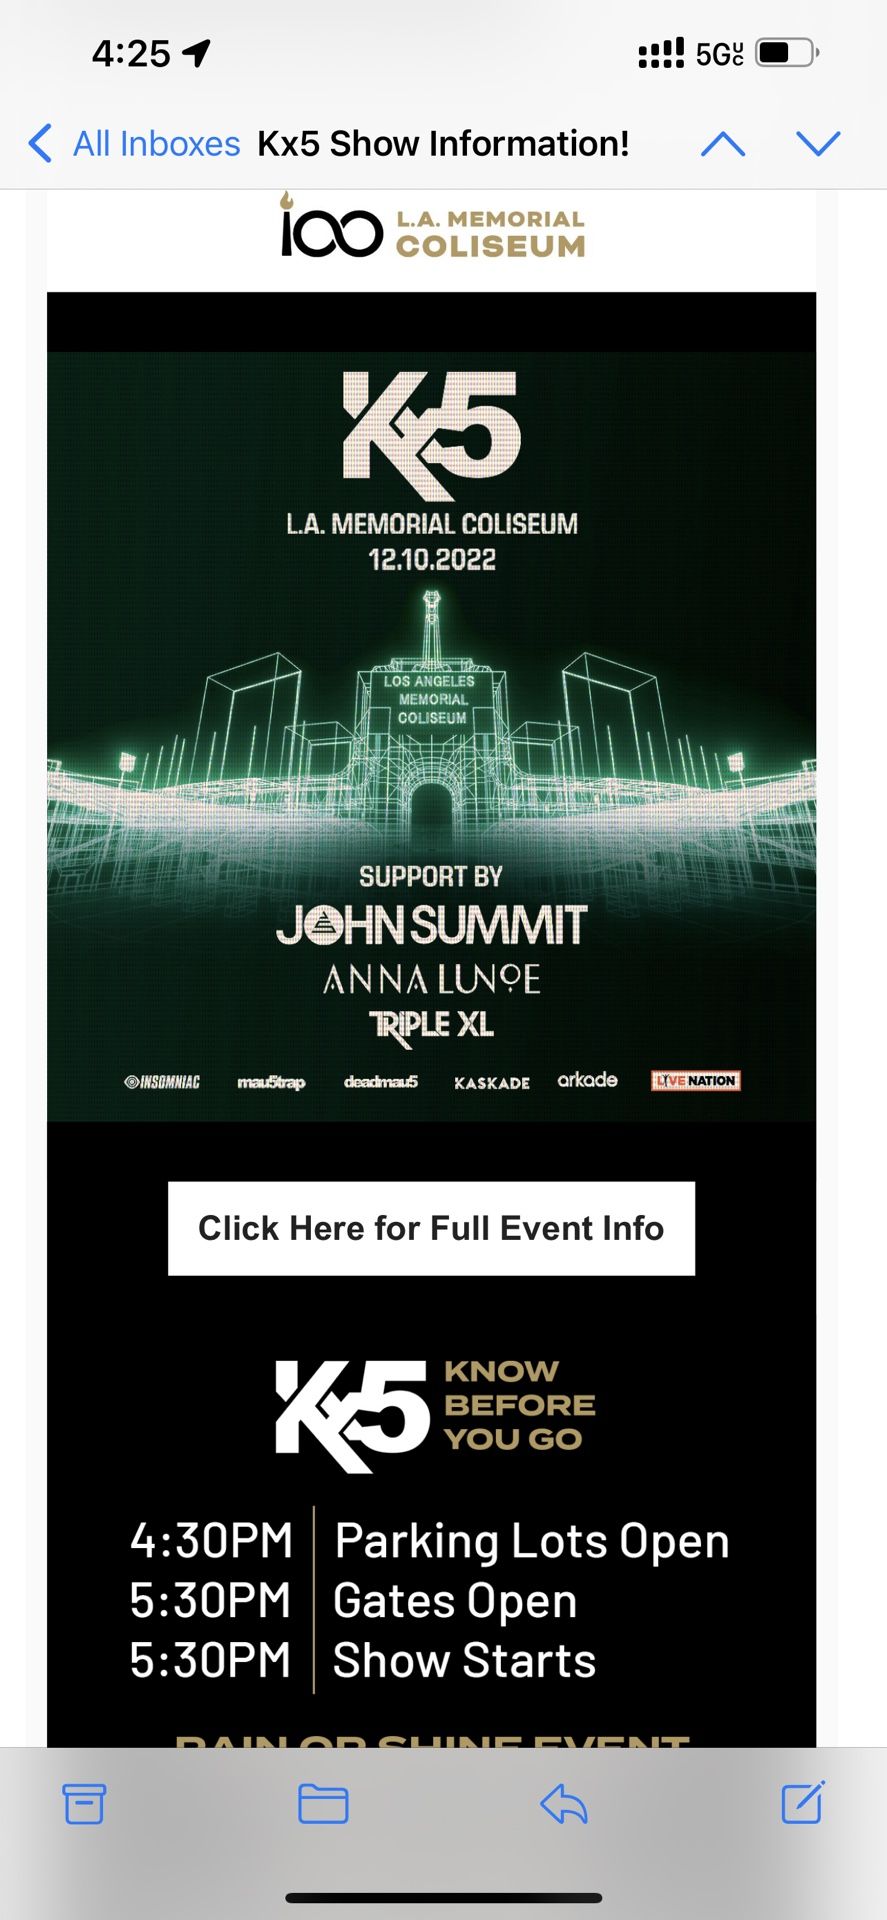 Kx5 SAT 12/10 JOHN SUMMIT Tickets $95